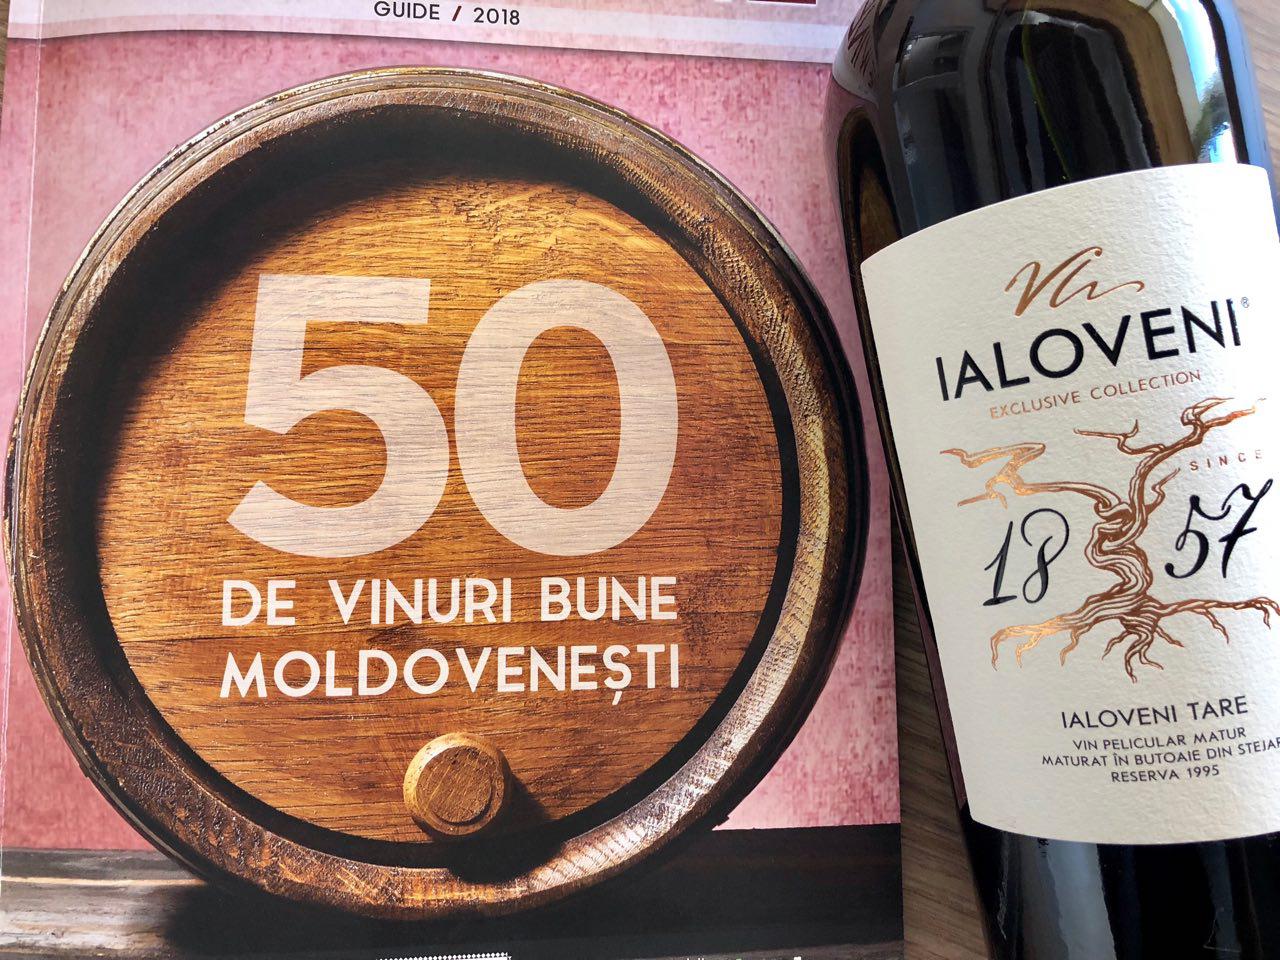 Topul celor mai bune vinuri moldovenești până în 125 lei